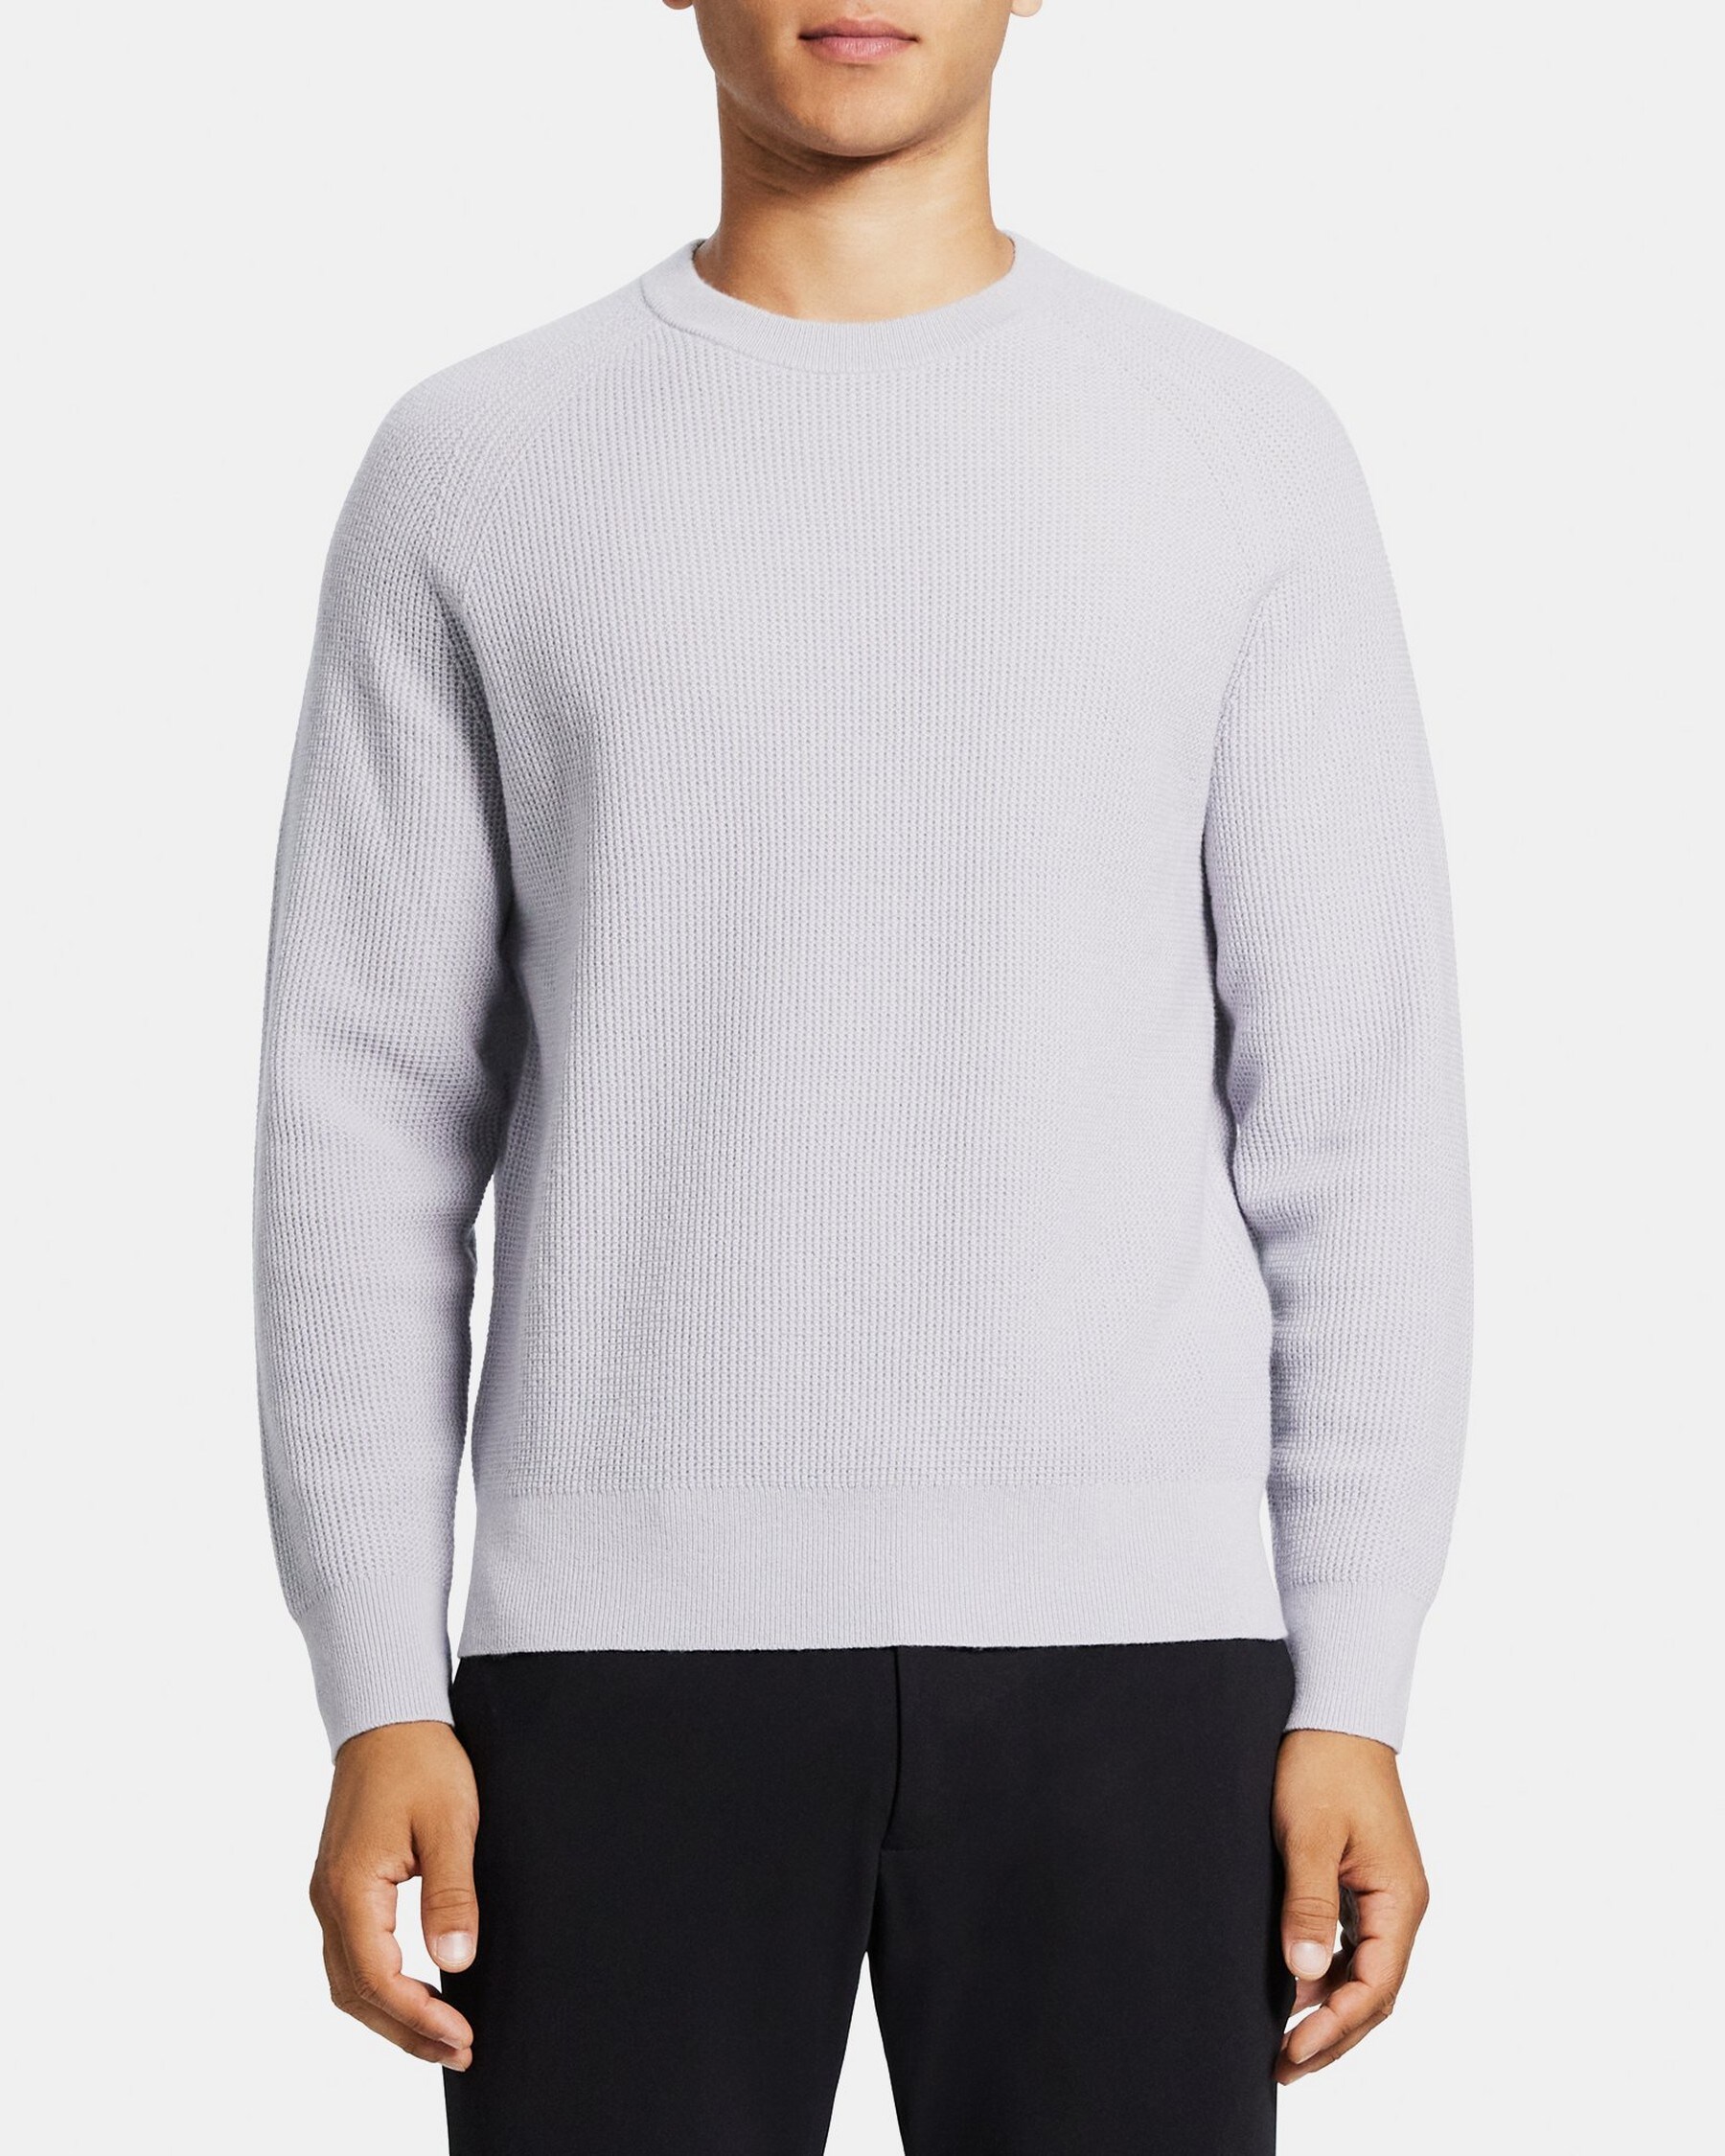 띠어리 Theory Crewneck Sweater in Wool-Cashmere,GRAVITY